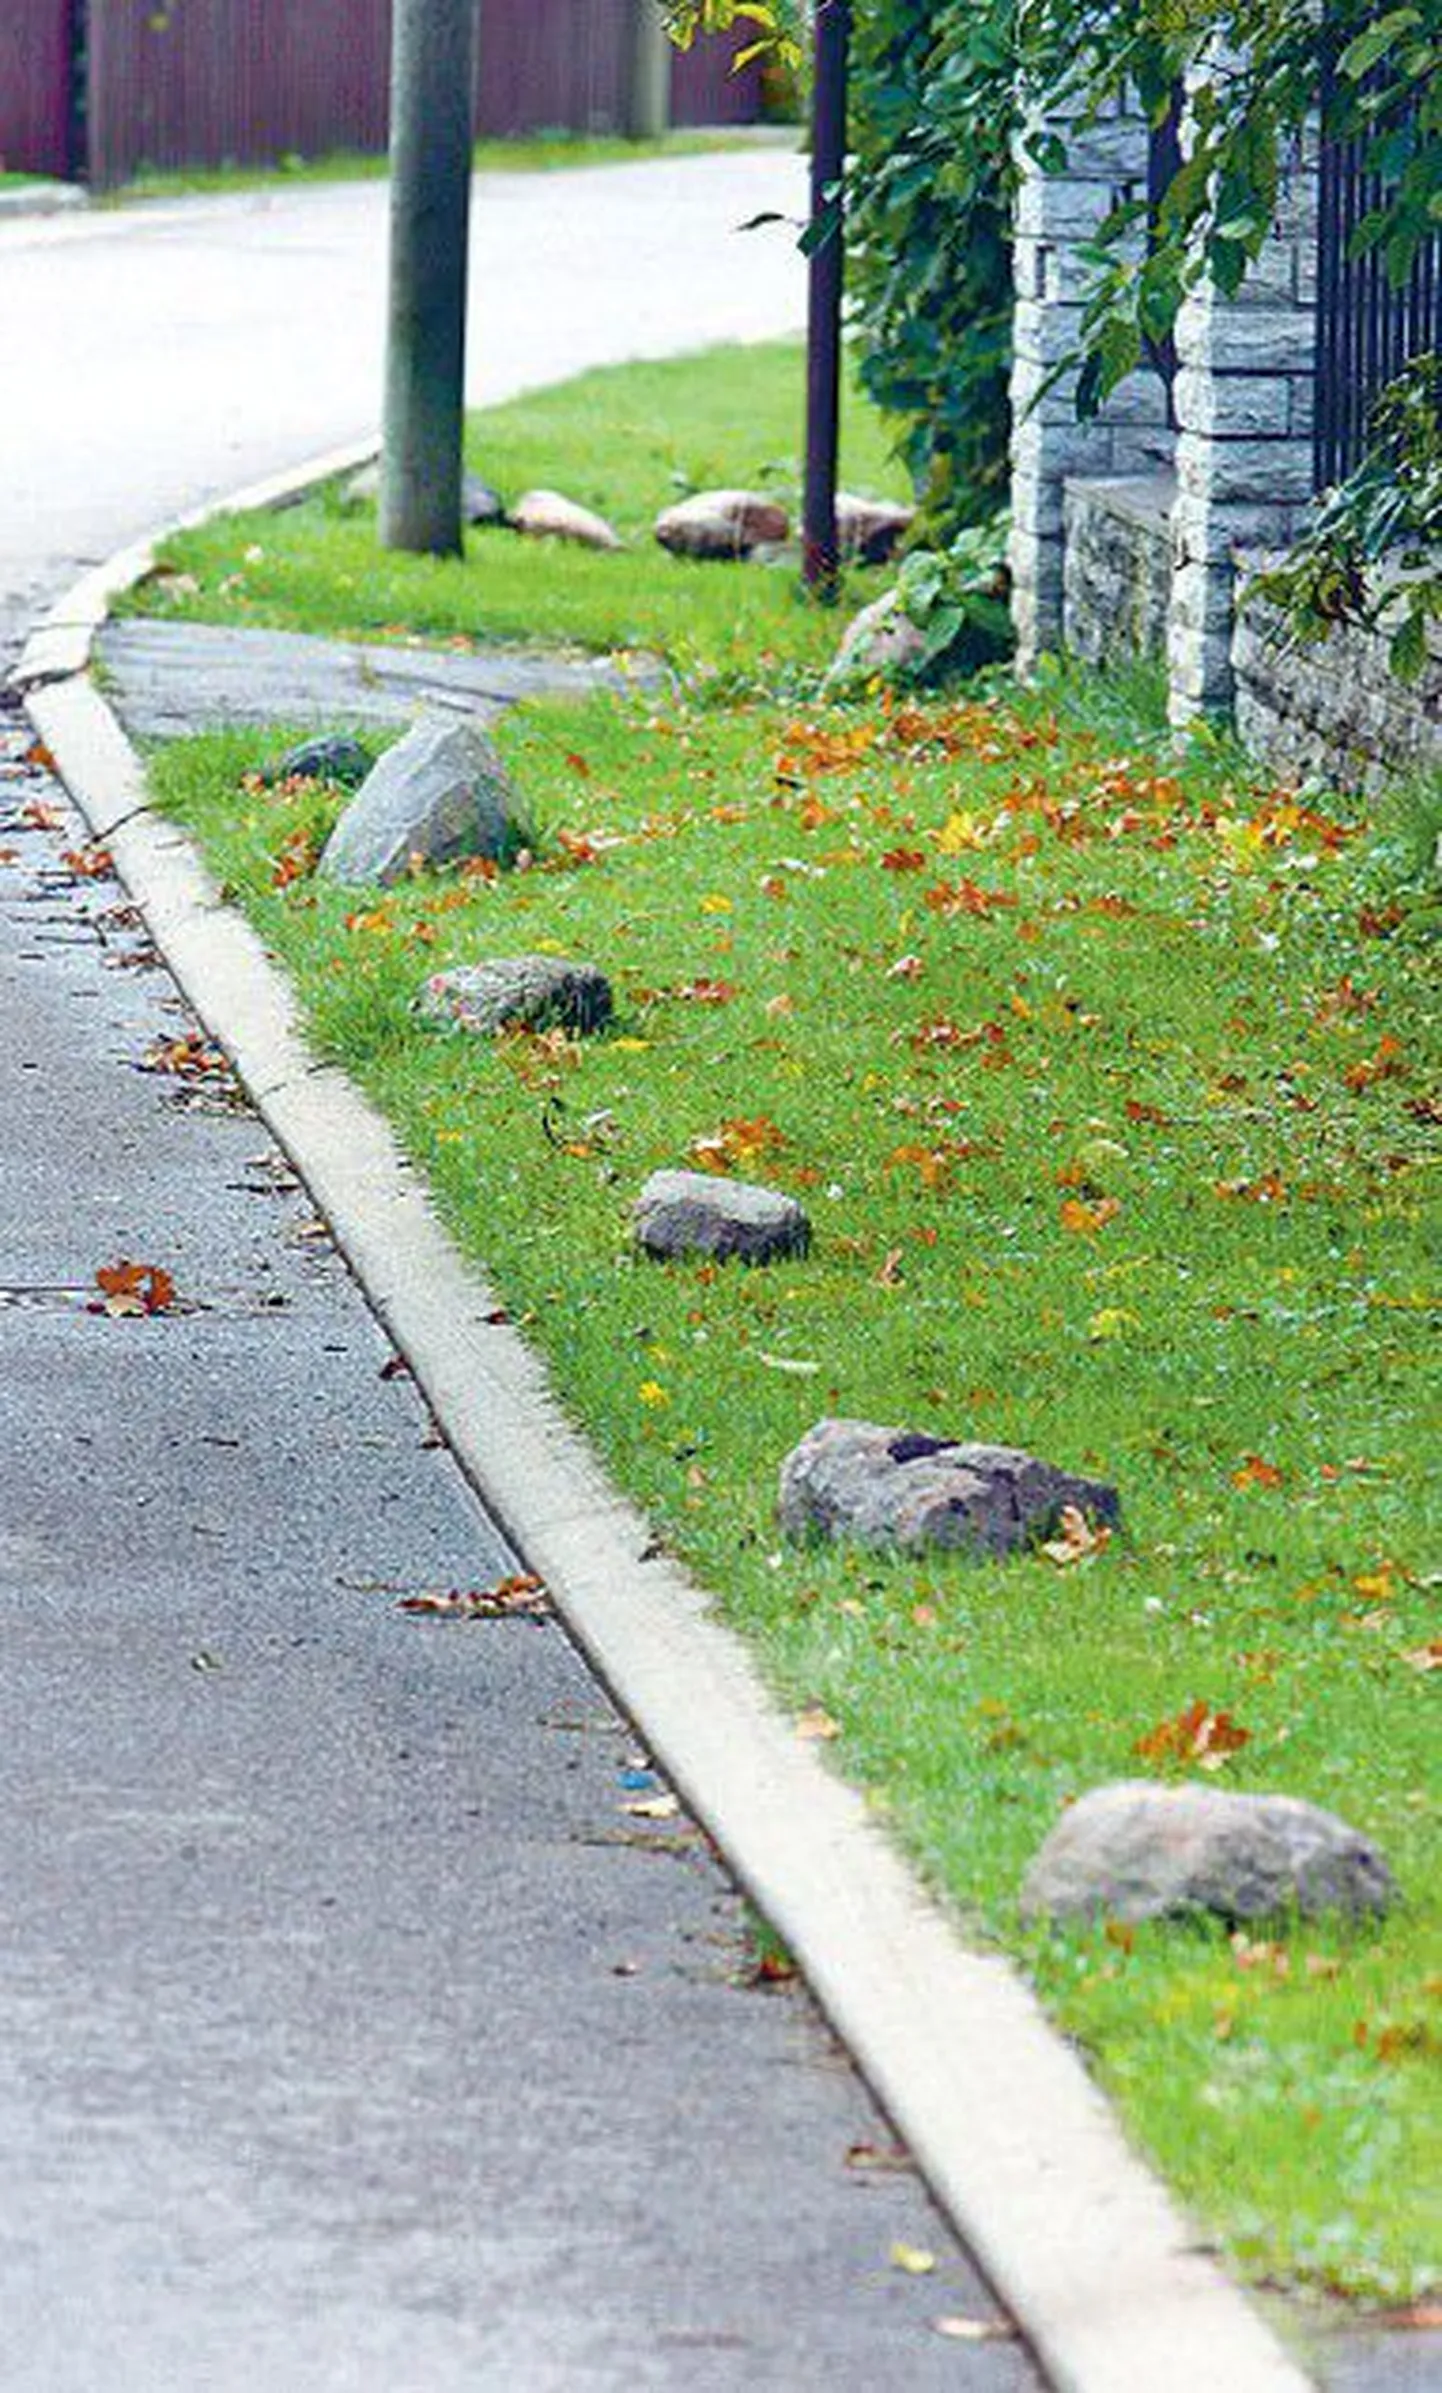 В Меривялья на Ида теэ камни установлены по обеим сторонам улицы, что может создать проблемы в дорожном движении.